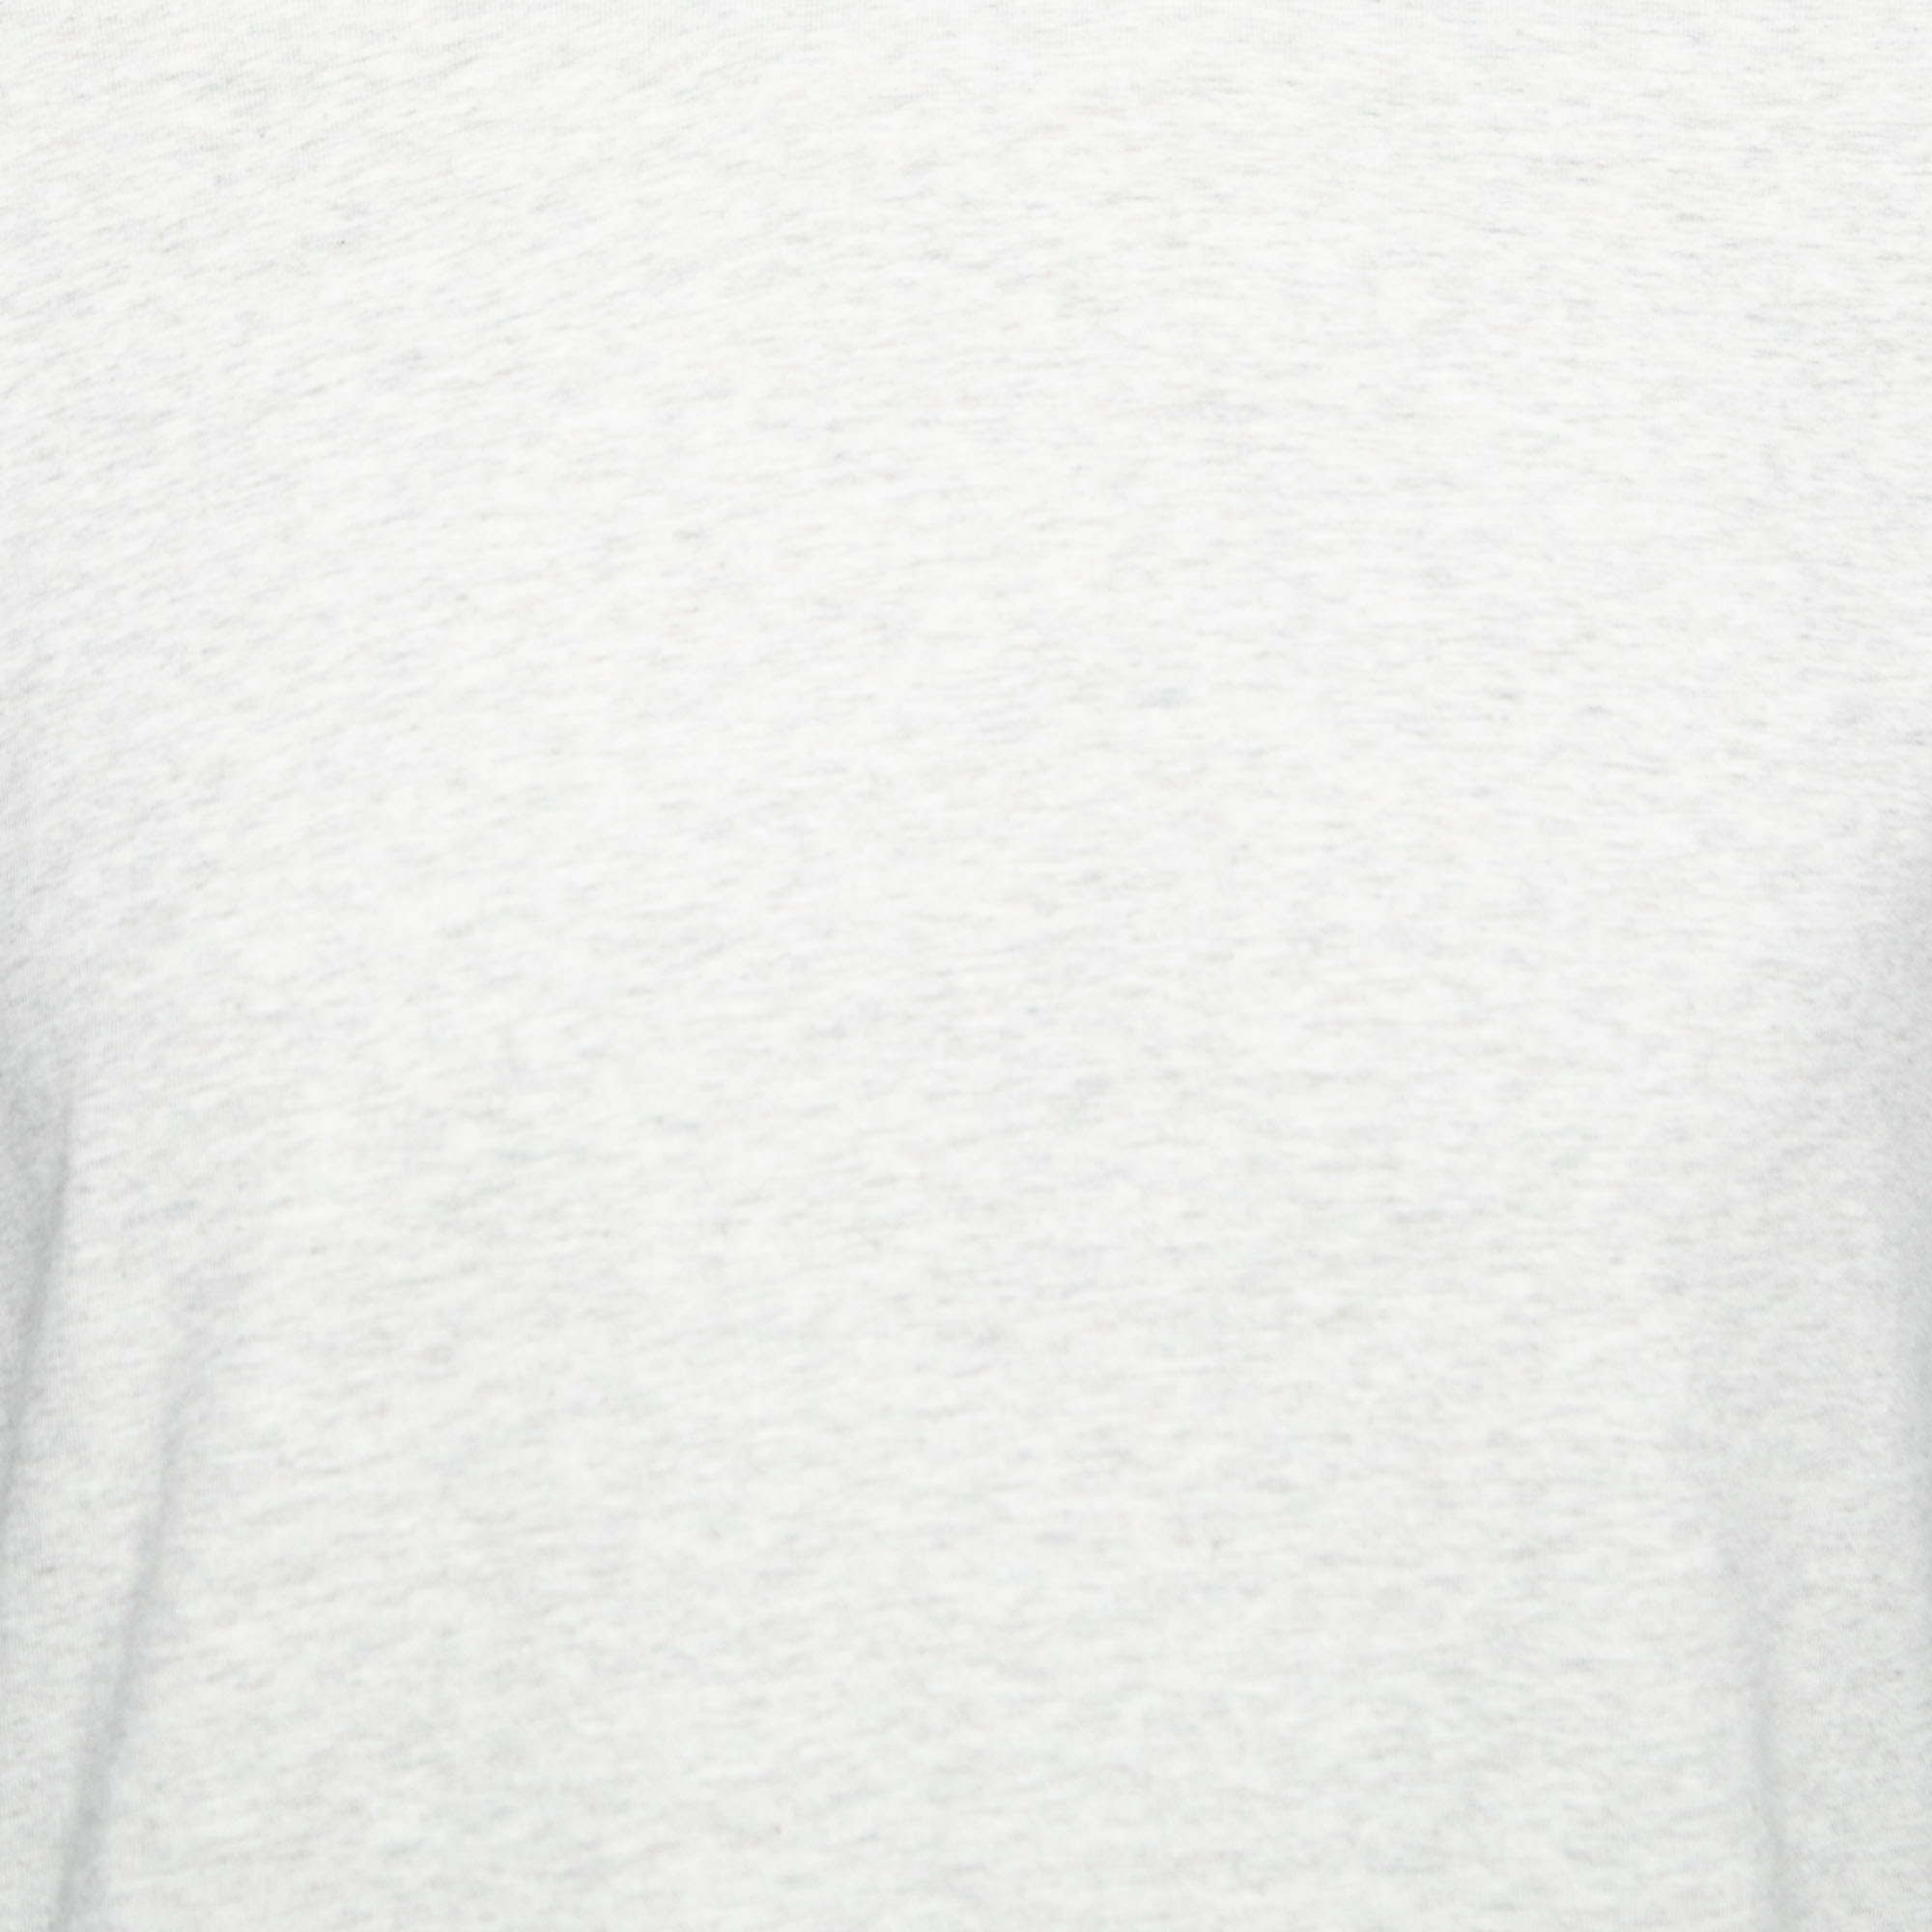 Polo Ralph Lauren Light Grey Cotton Crew Neck Long Sleeve T-Shirt M